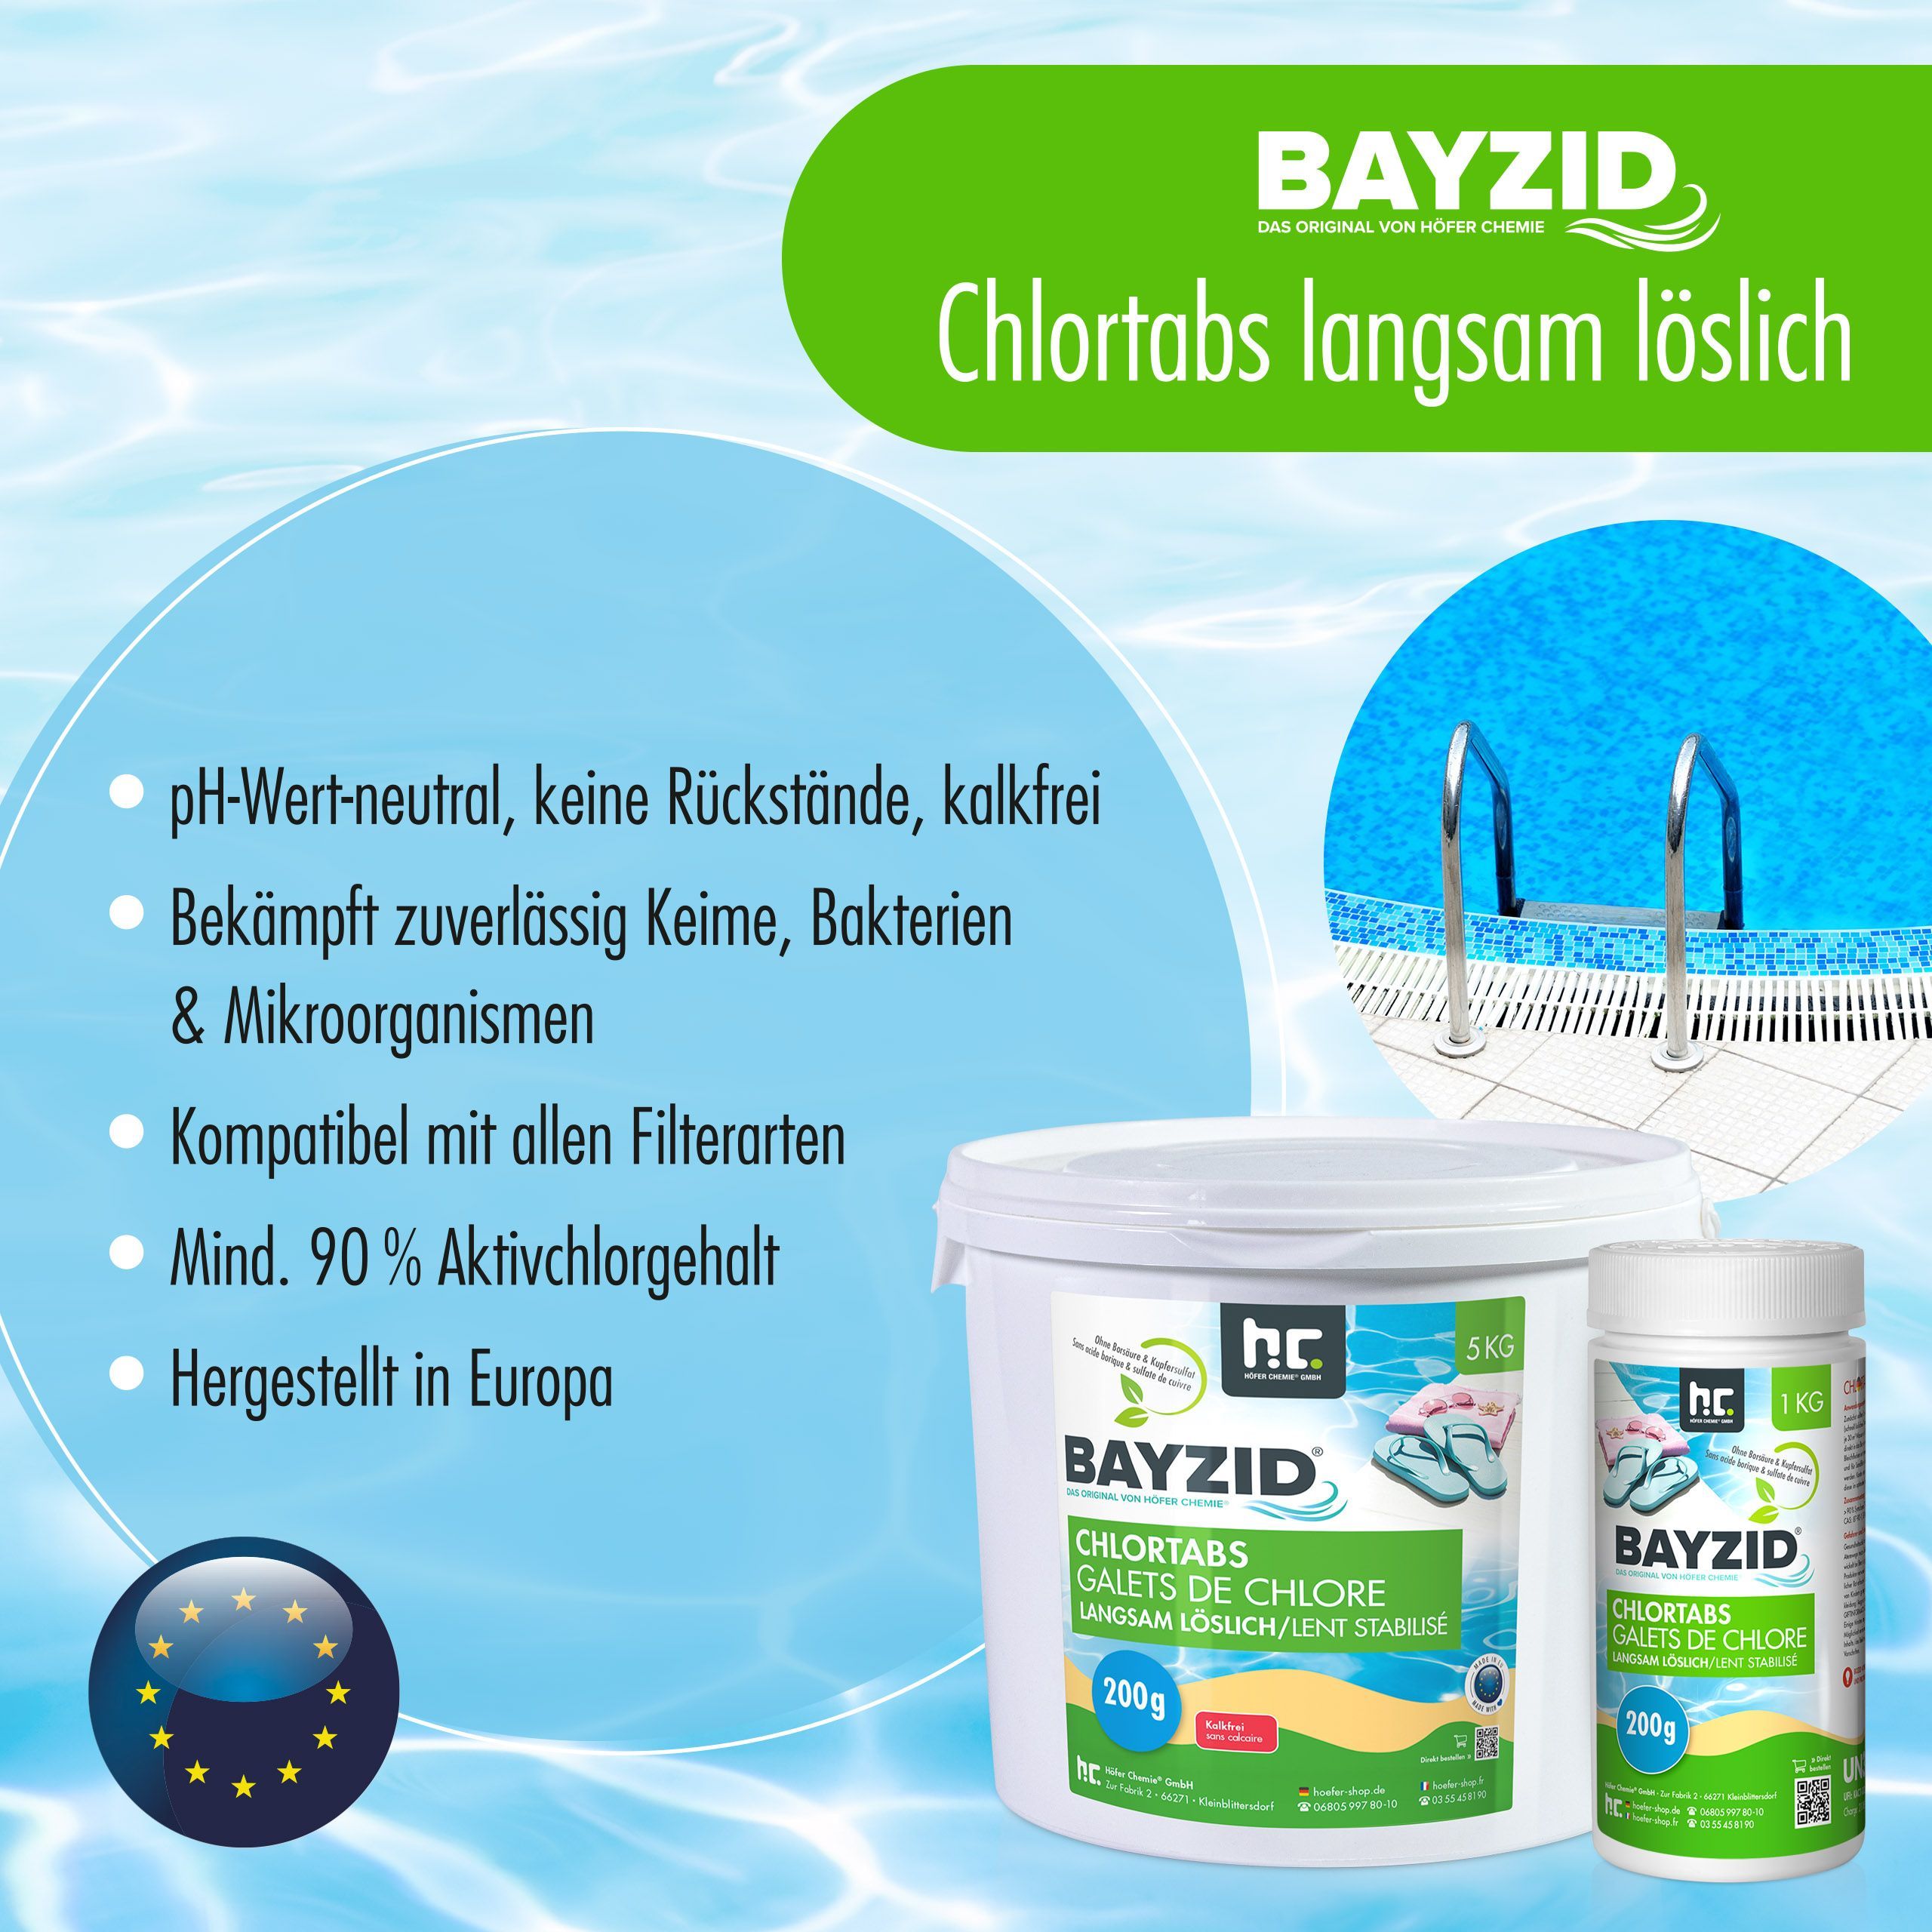 1 kg BAYZID® Galets de chlore 200g à dissolution lente